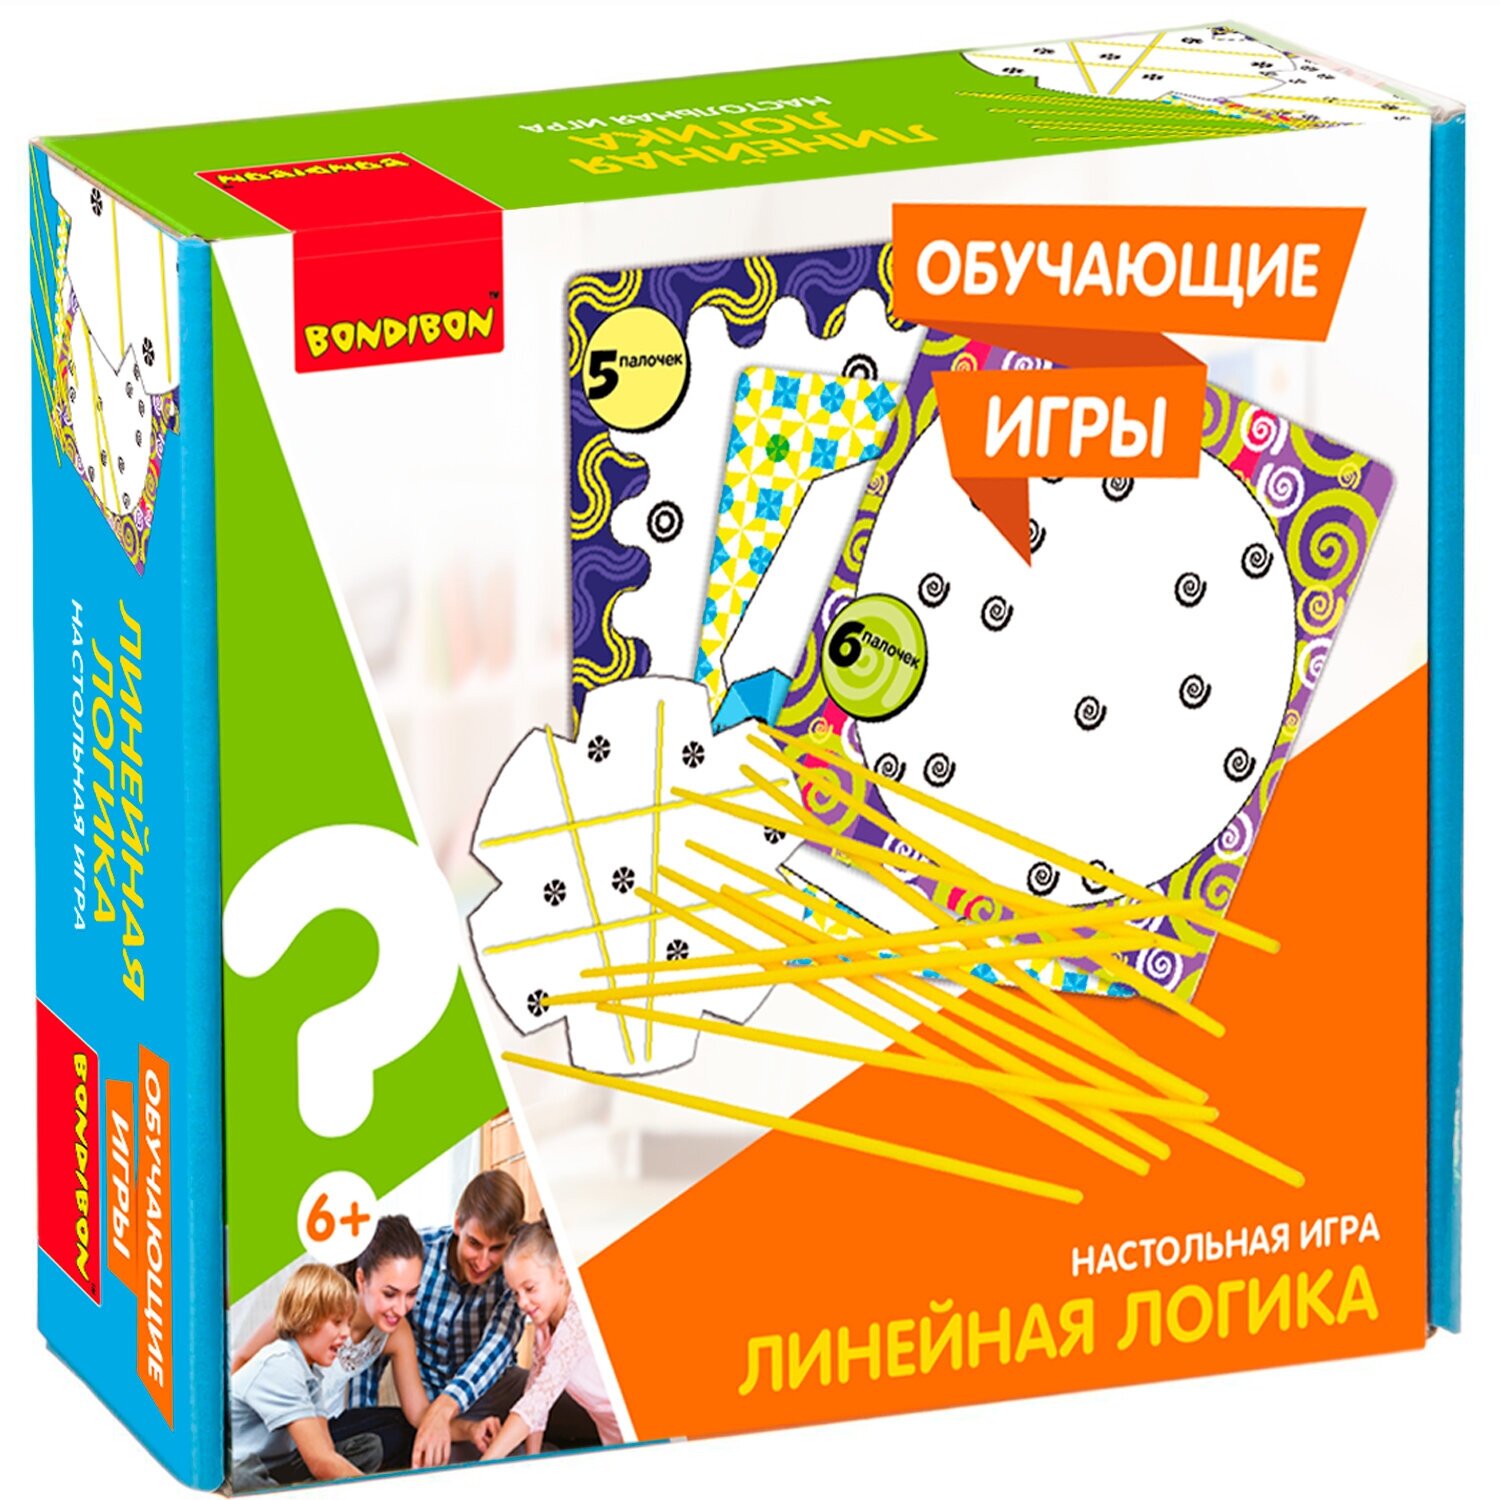 Развивающая игра головоломка линейная логика Bondibon обучающая, логическая с палочками для детей от 6 лет